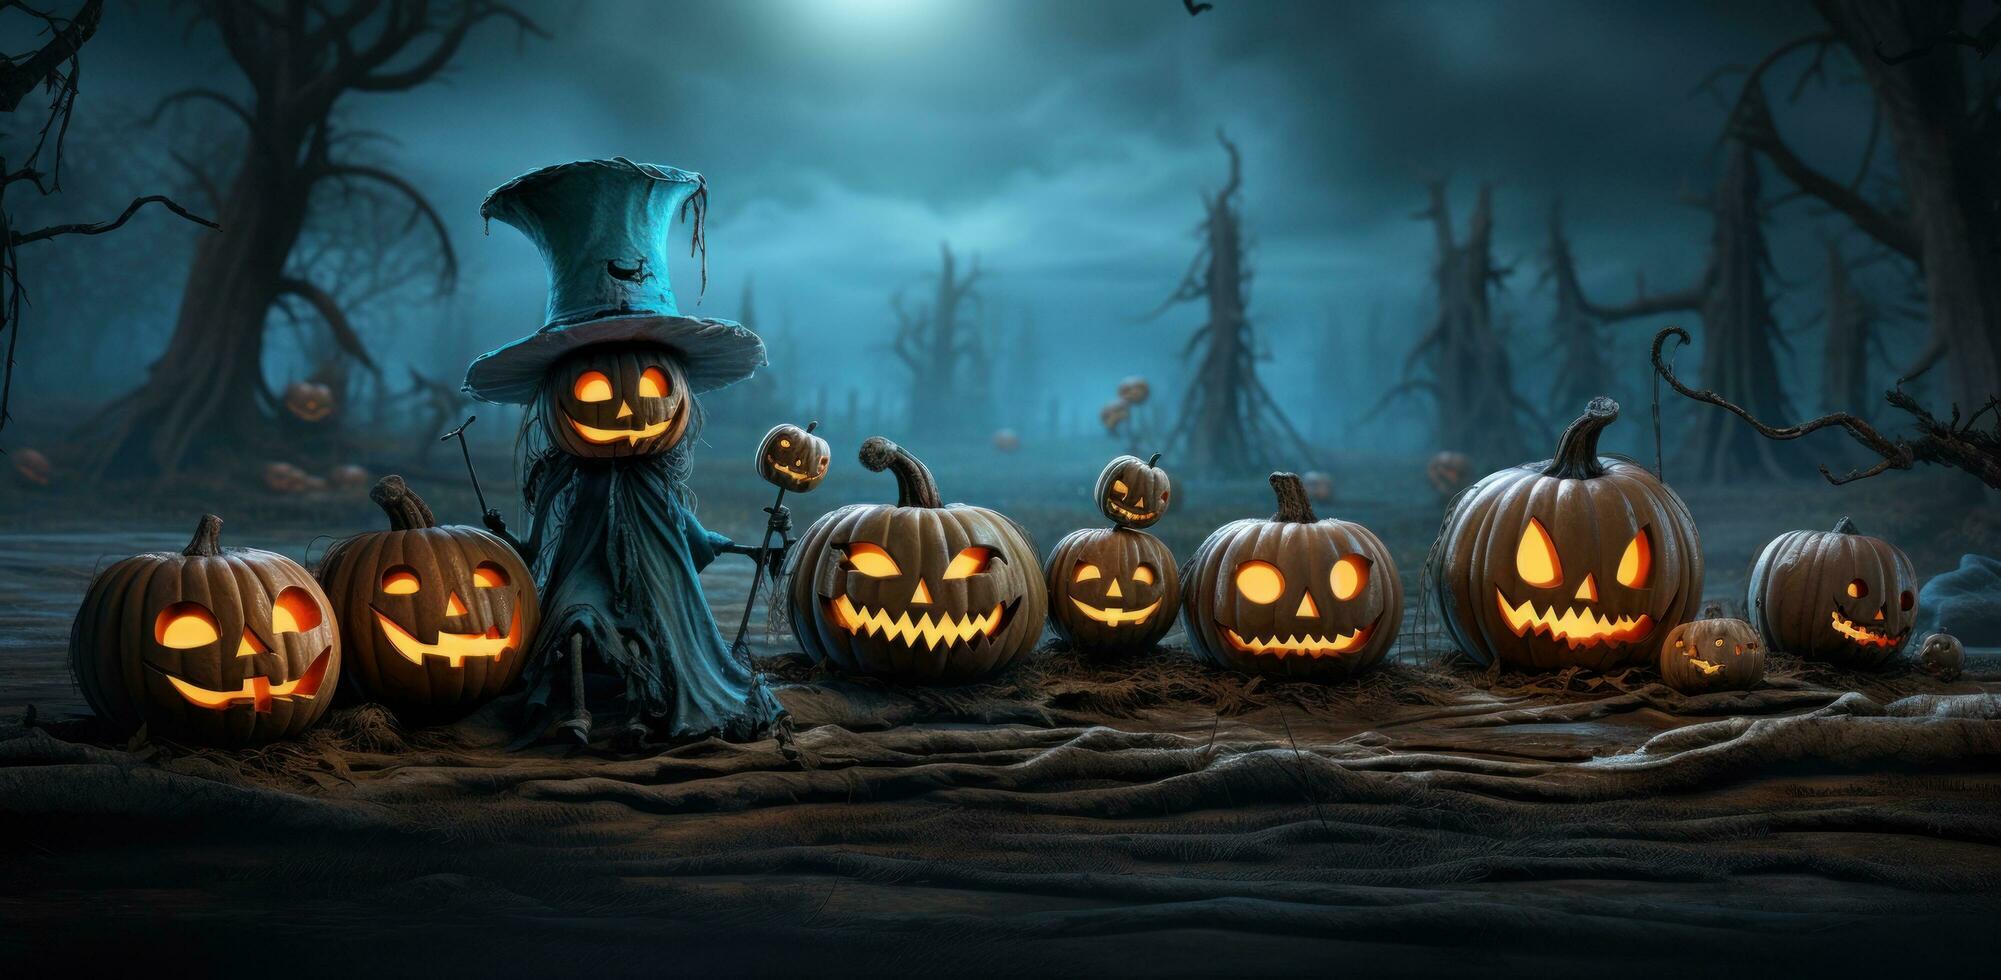 spöklik halloween bakgrund foto